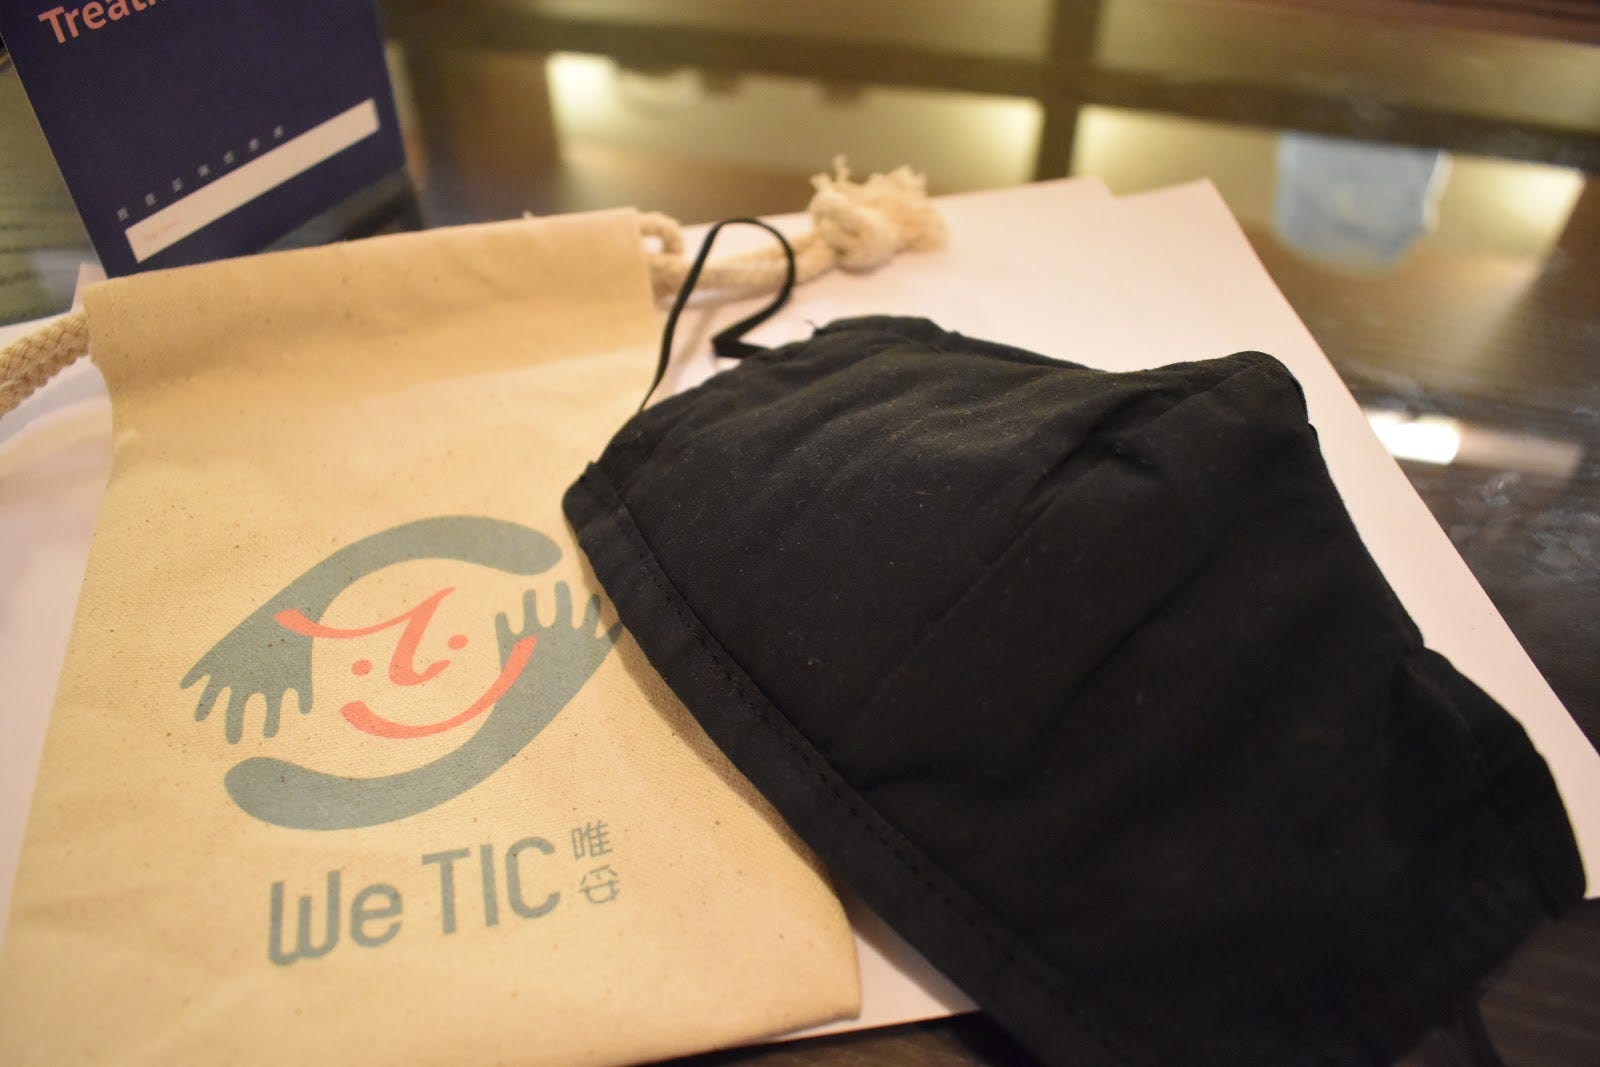 減音口罩與用來裝放的印有唯妥公司logo的袋子。